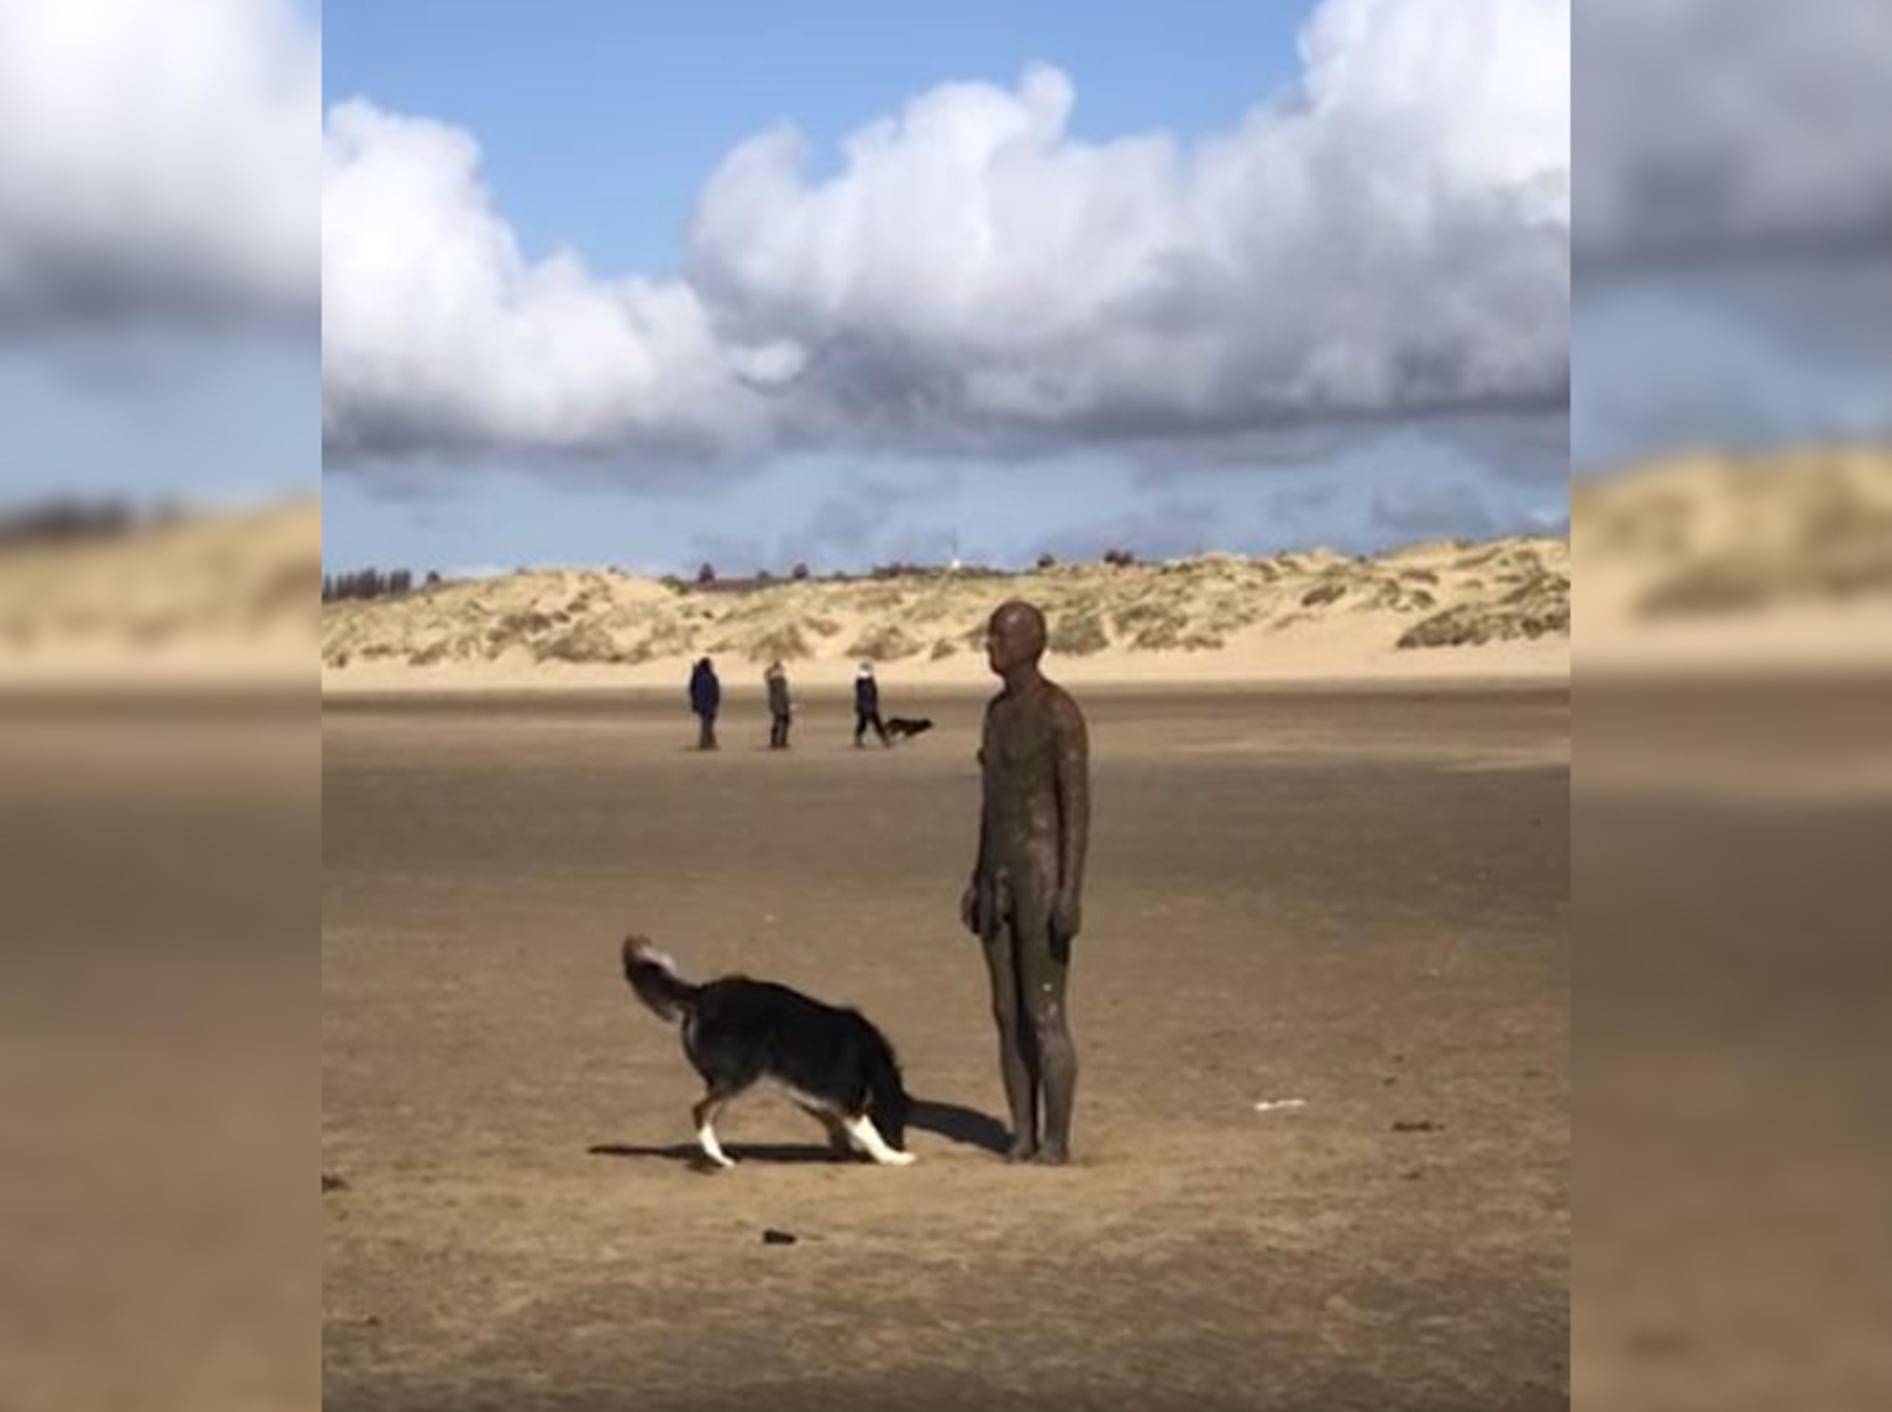 Hund Hurley will mit einer Statue spielen - Bild: YouTube/Caters Clips